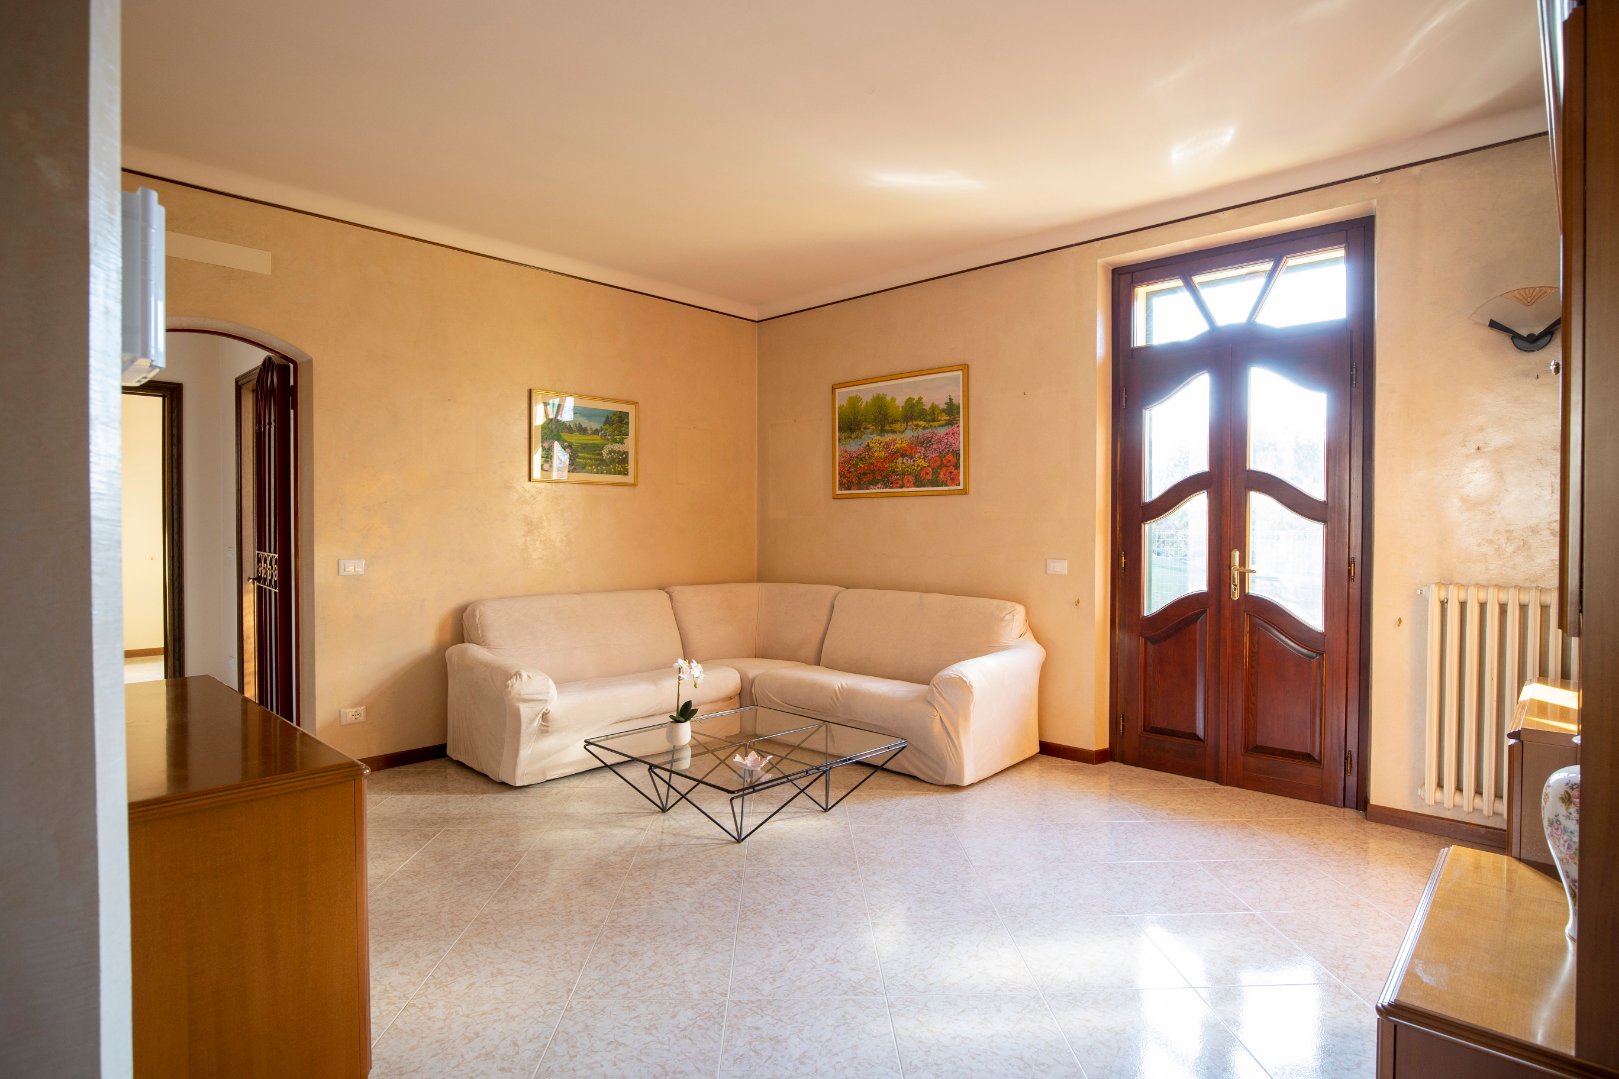 Villa Unifamiliare in vendita a Porto Mantovano